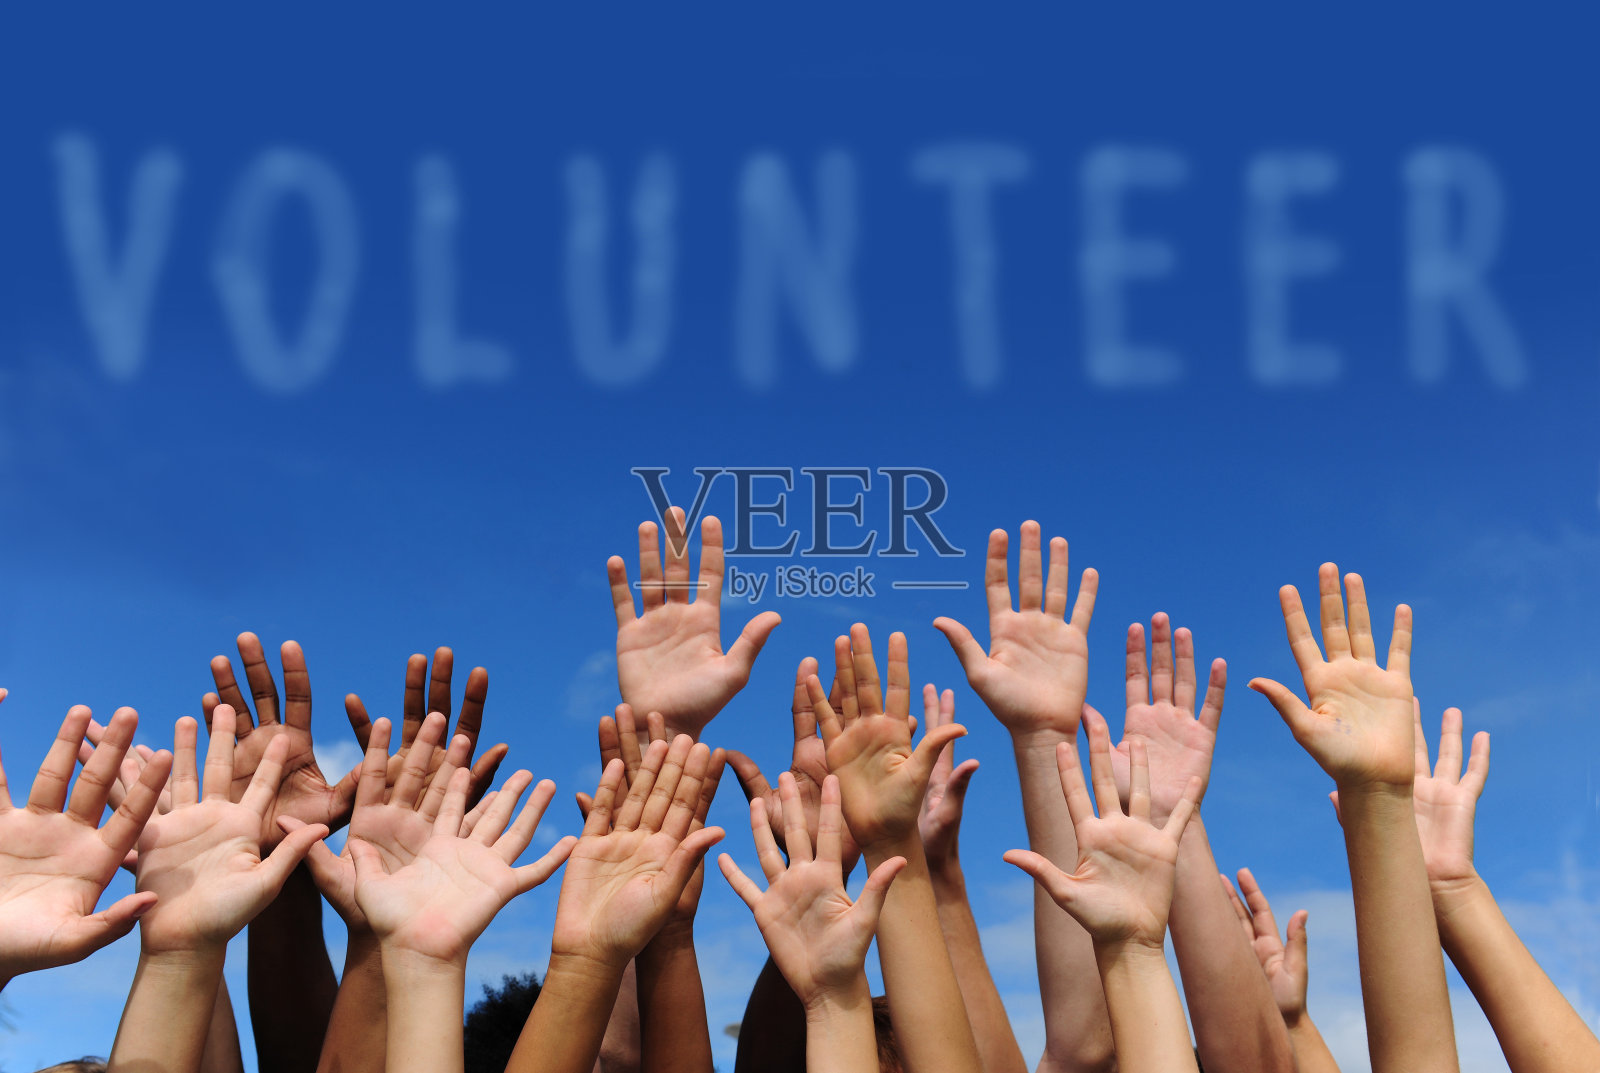 在“志愿者”一词下举起多只手照片摄影图片